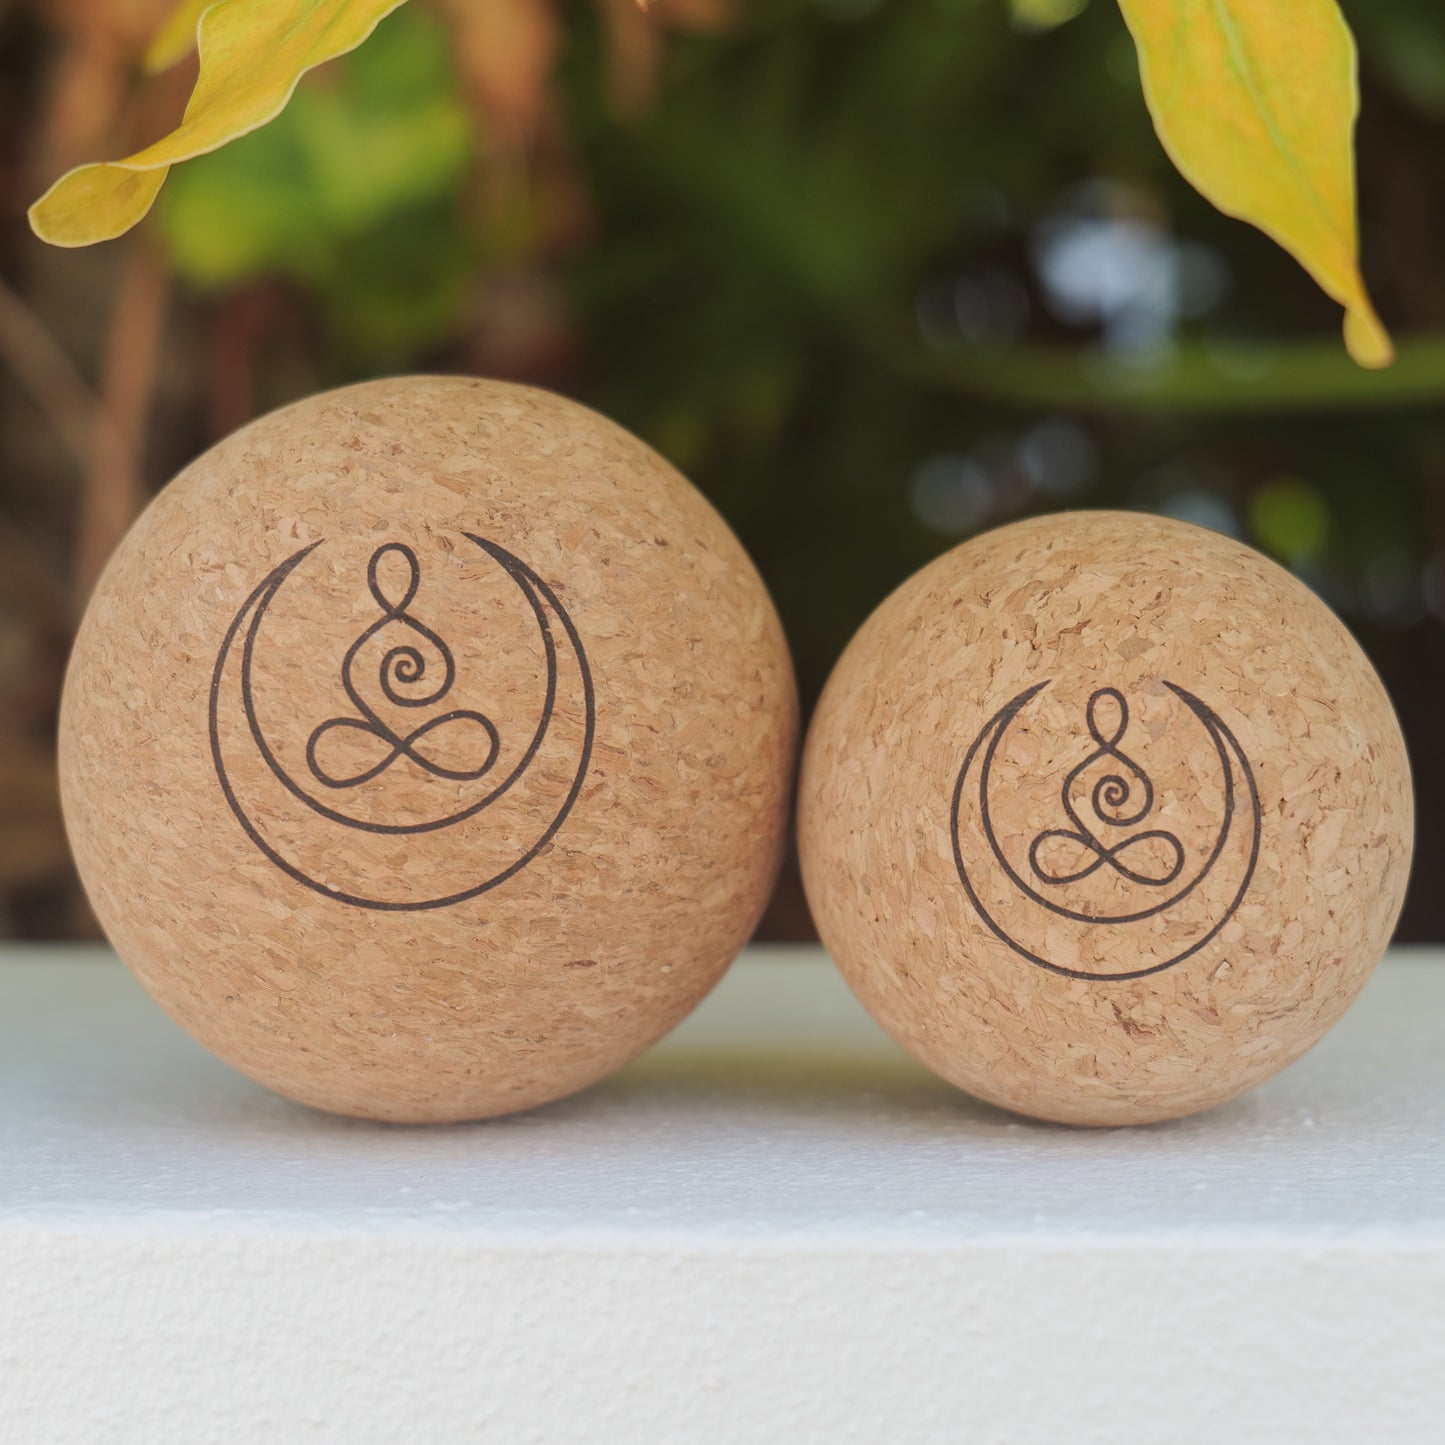 Cork massage balls with OGI NEST logo.